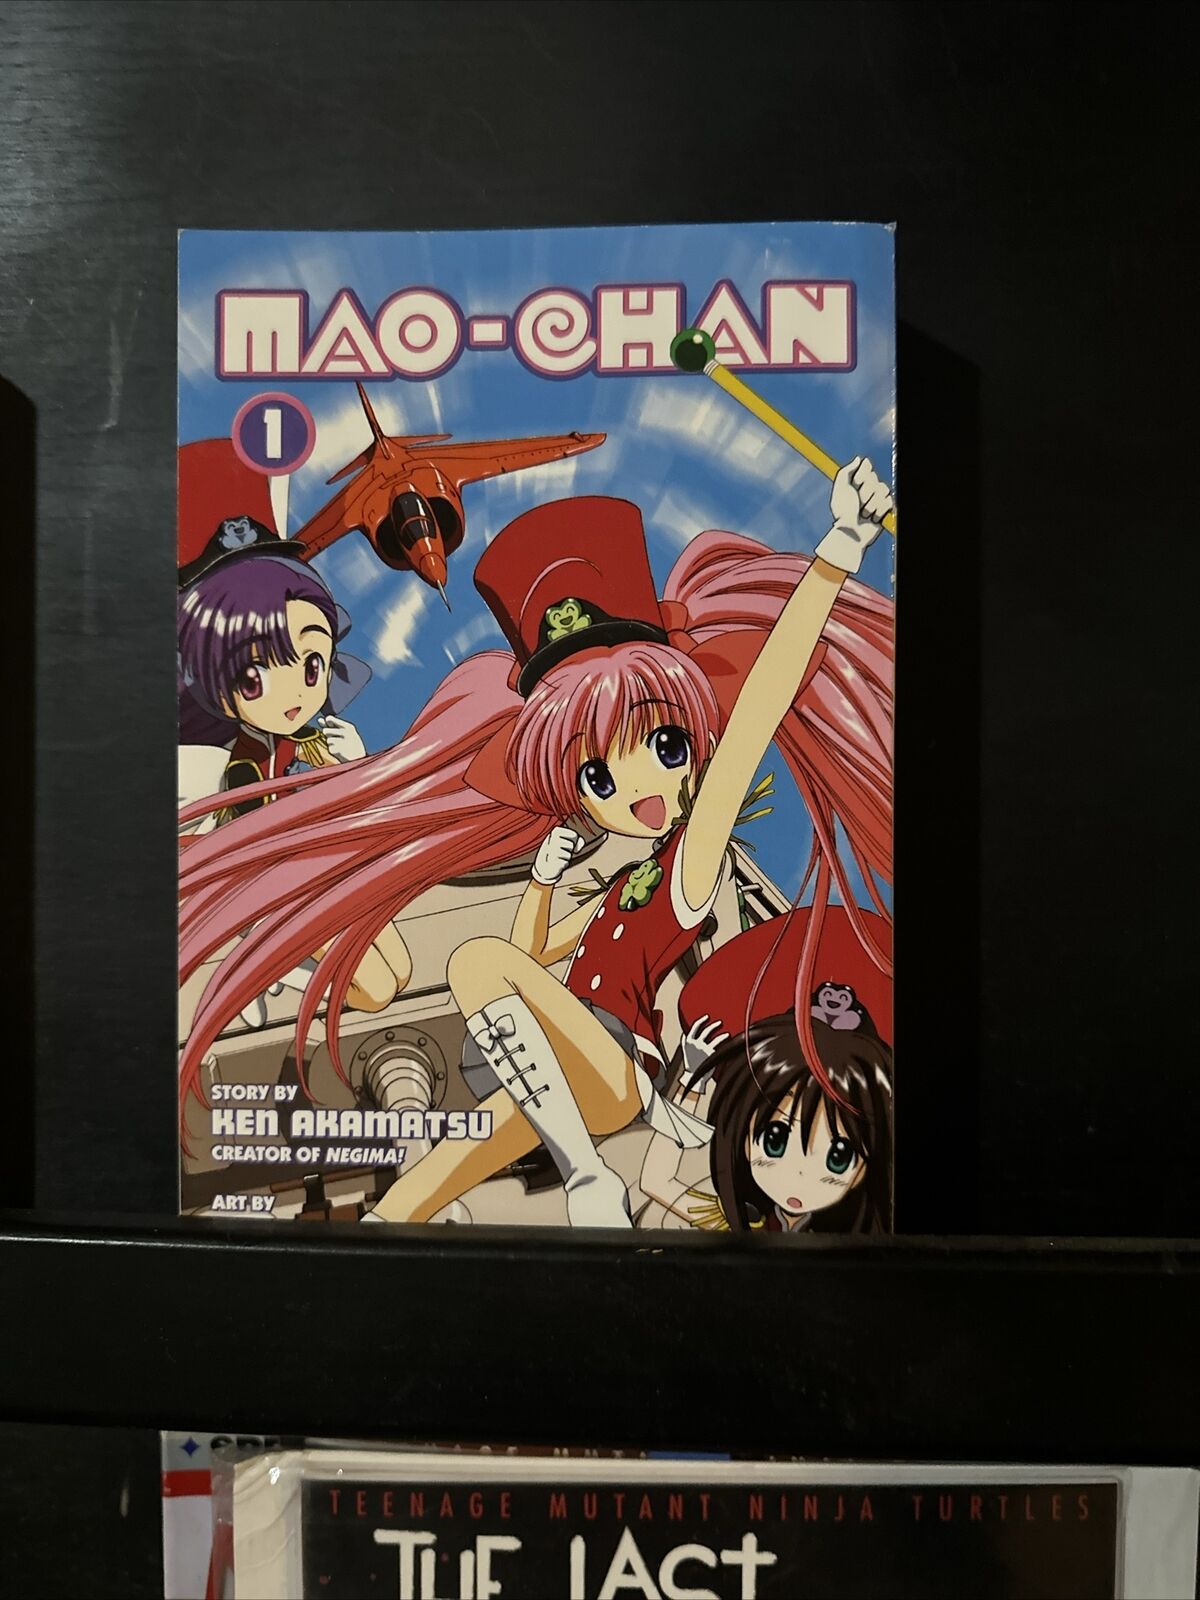 Mao-Chan Volume 1 By Ken Akamatsu Art By Ran Published By Del Rey + Kodansha